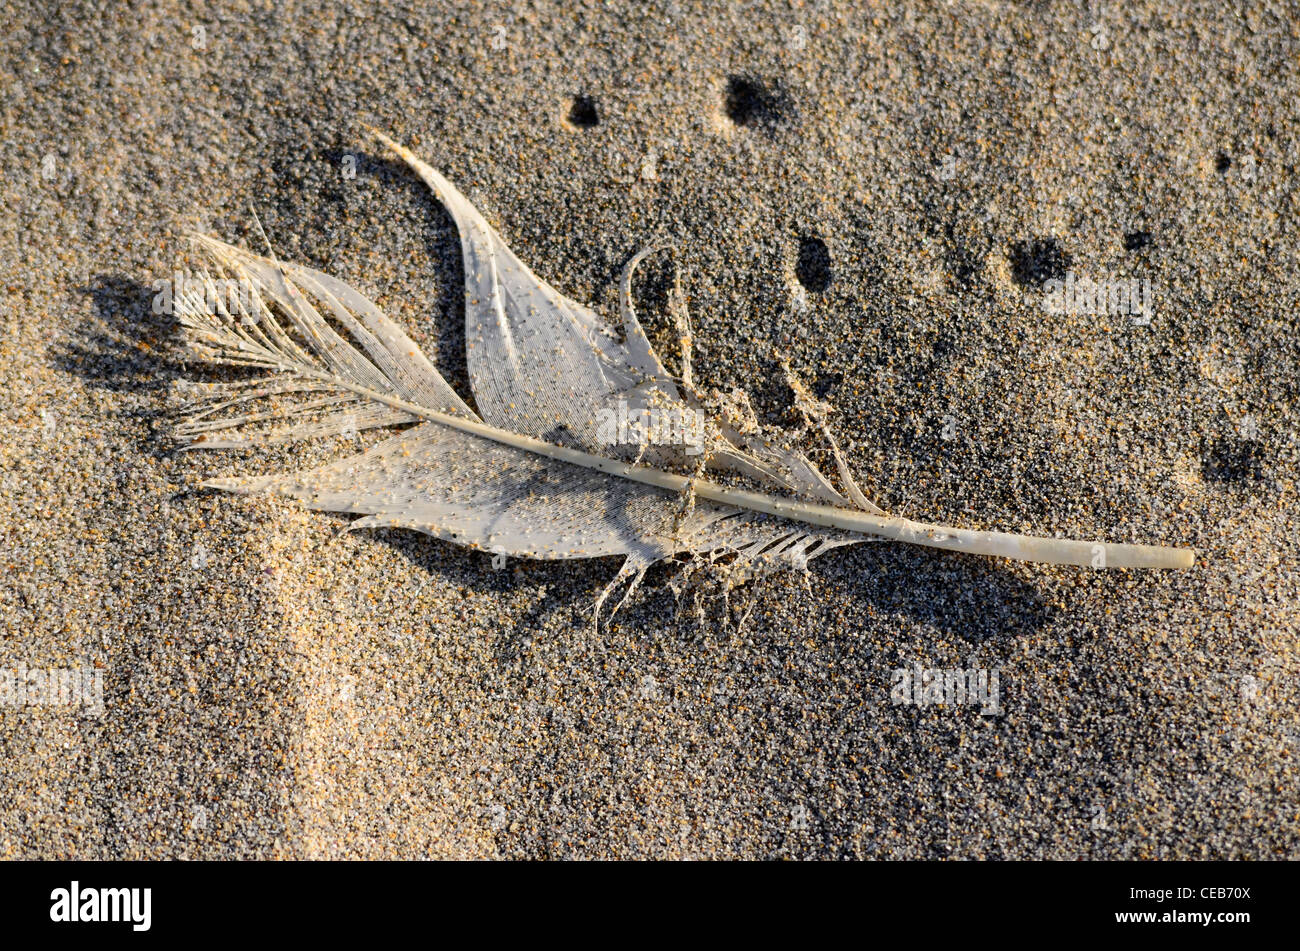 white feather on sandy beach Stock Photo